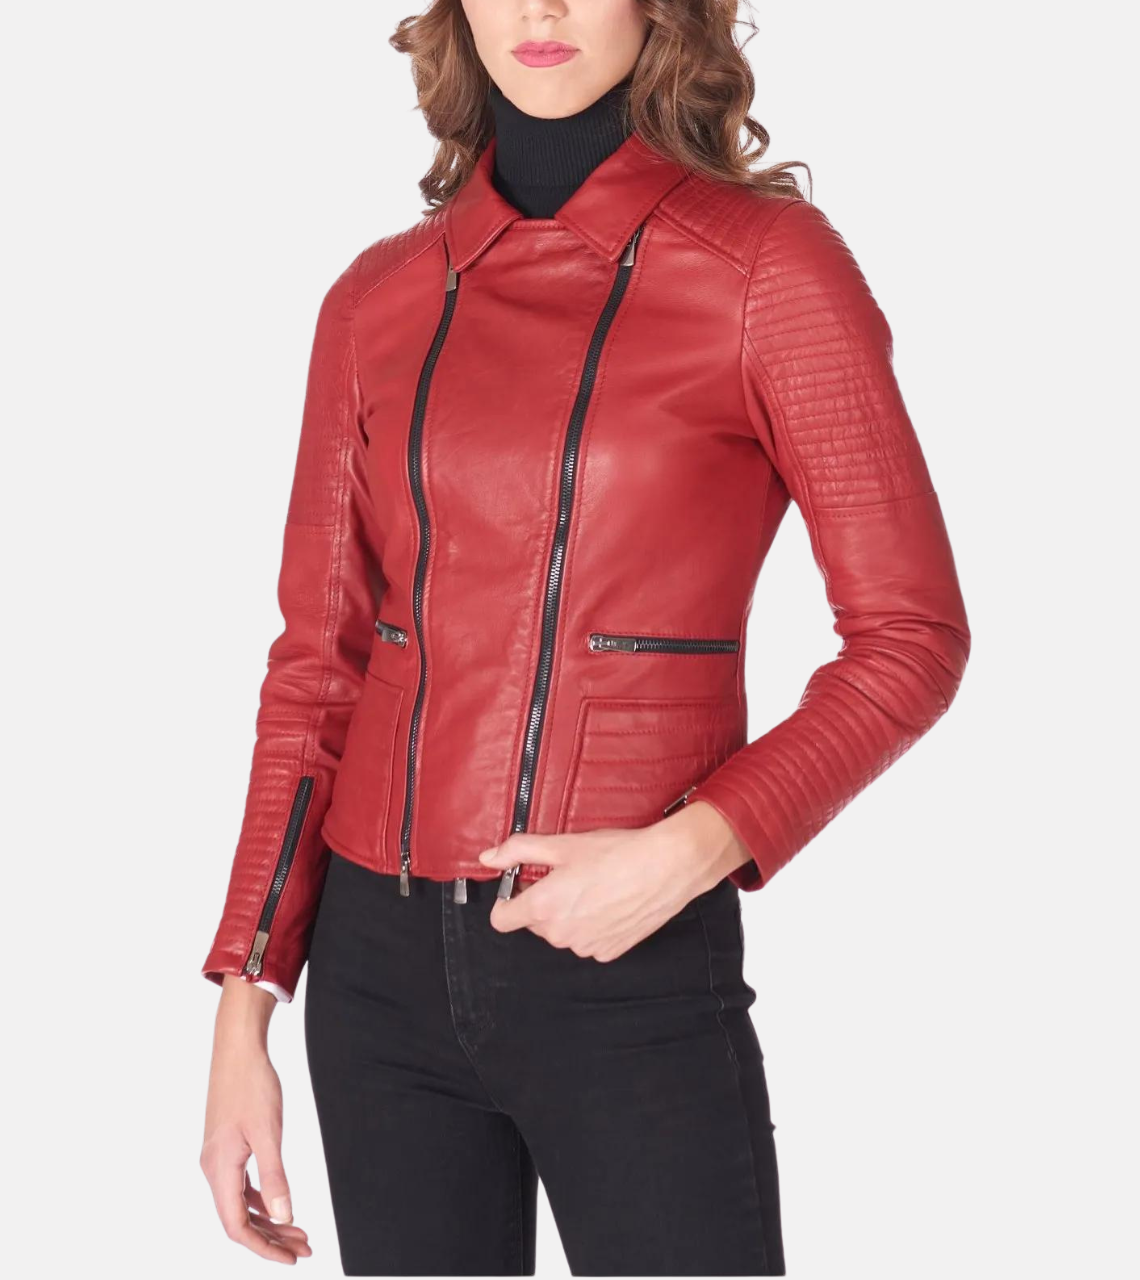 Women’s Biker Leather Jacket